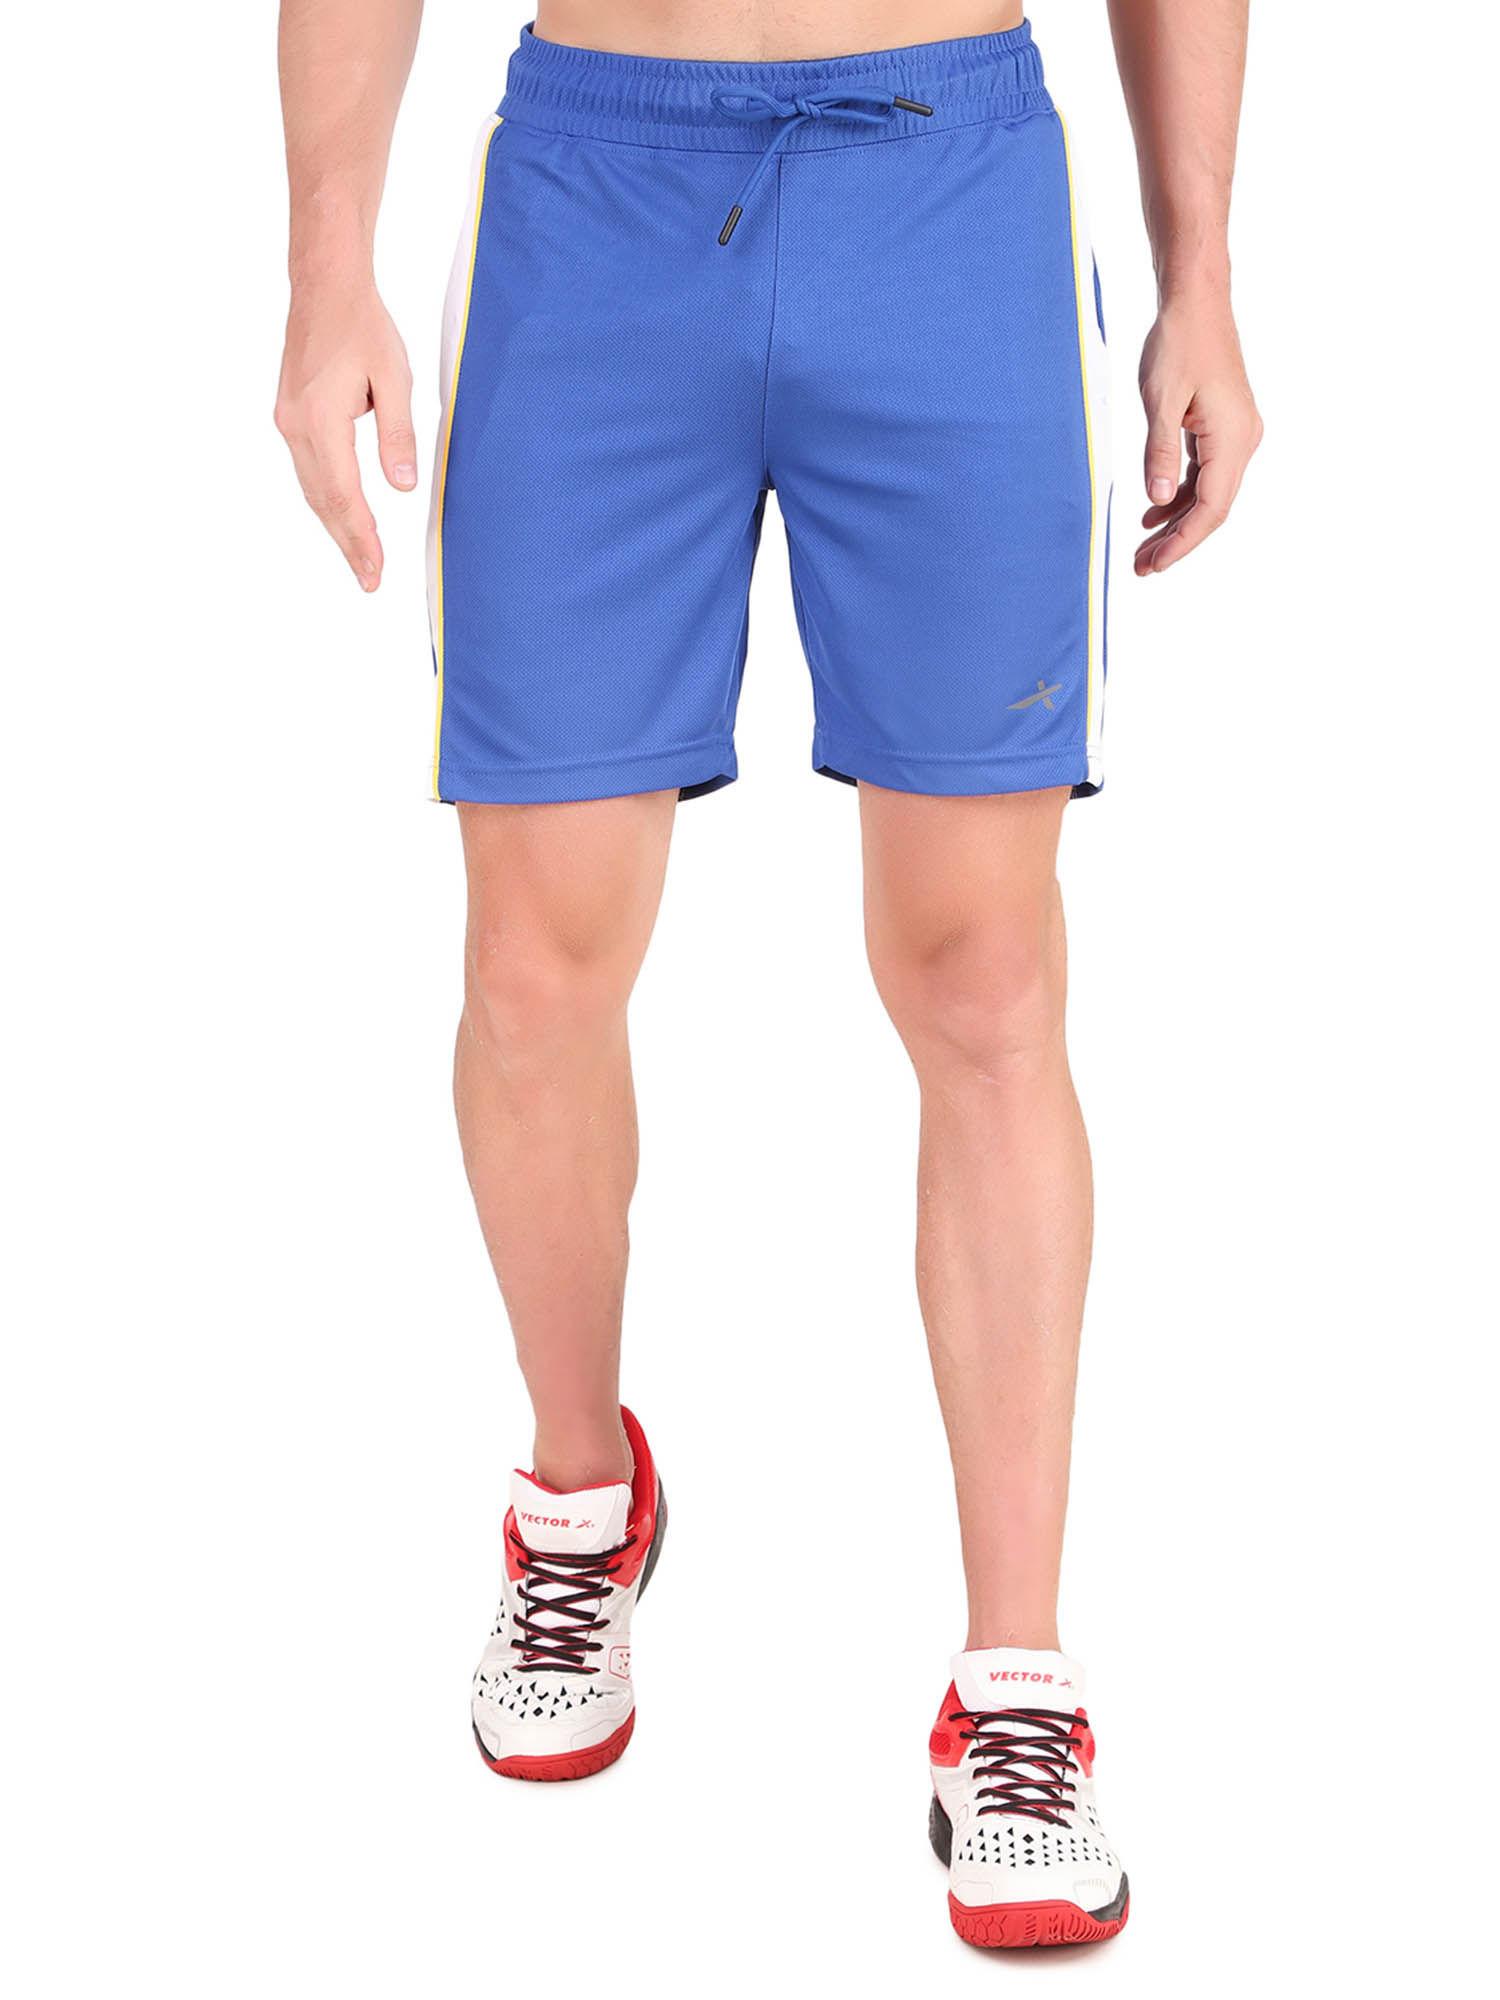 rice-knit-men-running-shorts---blue